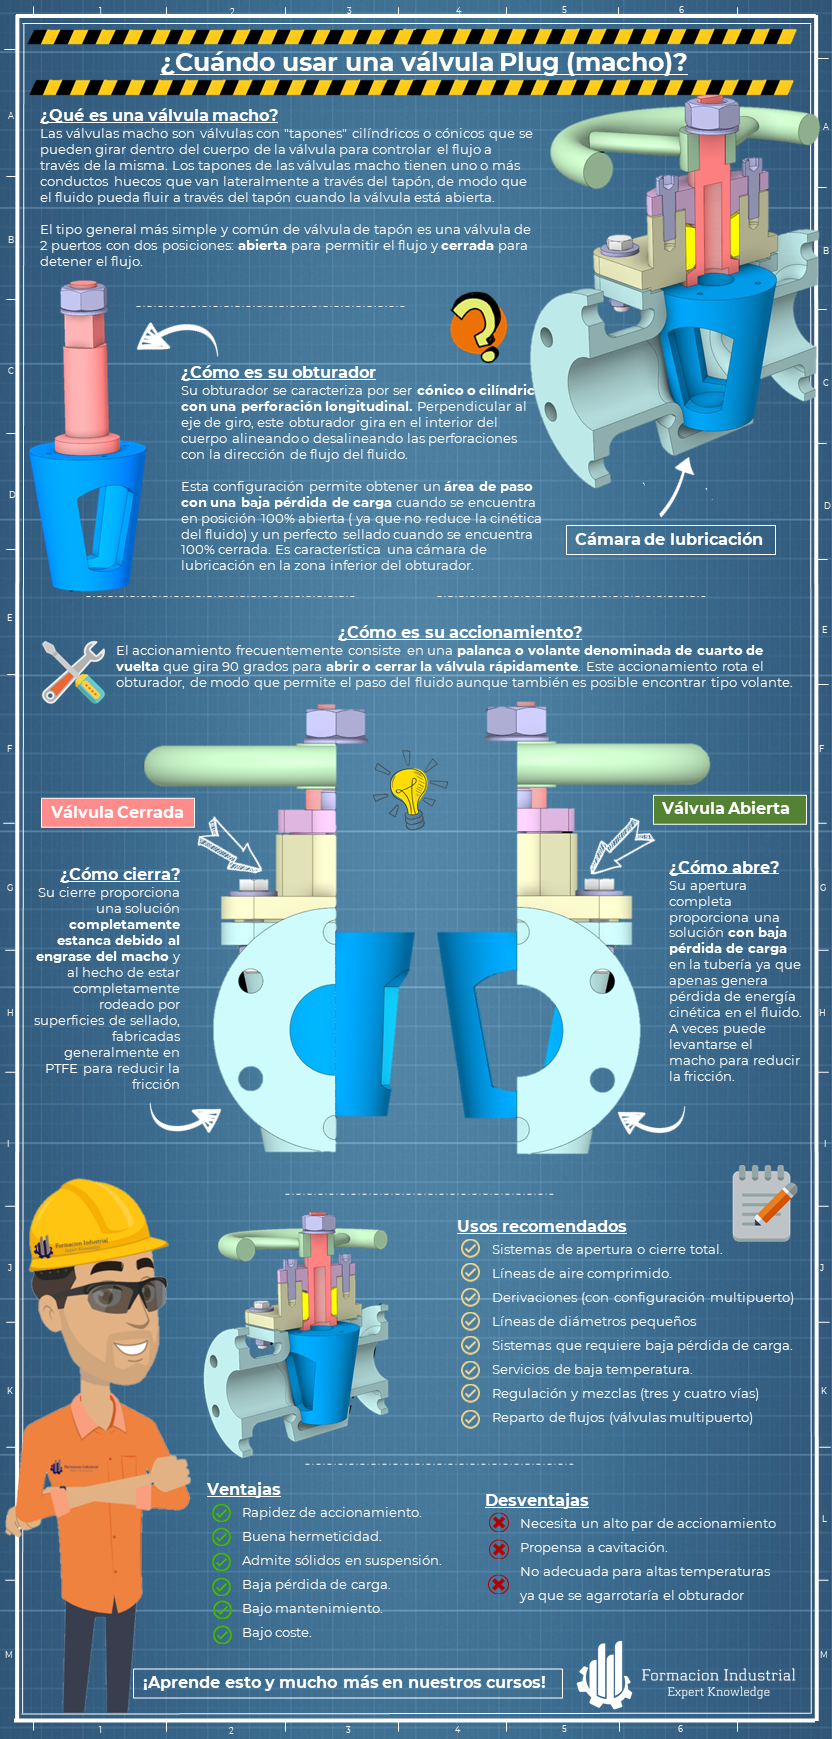 Infografía detallada sobre los usos y aplicaciones de las válvulas macho en la industria